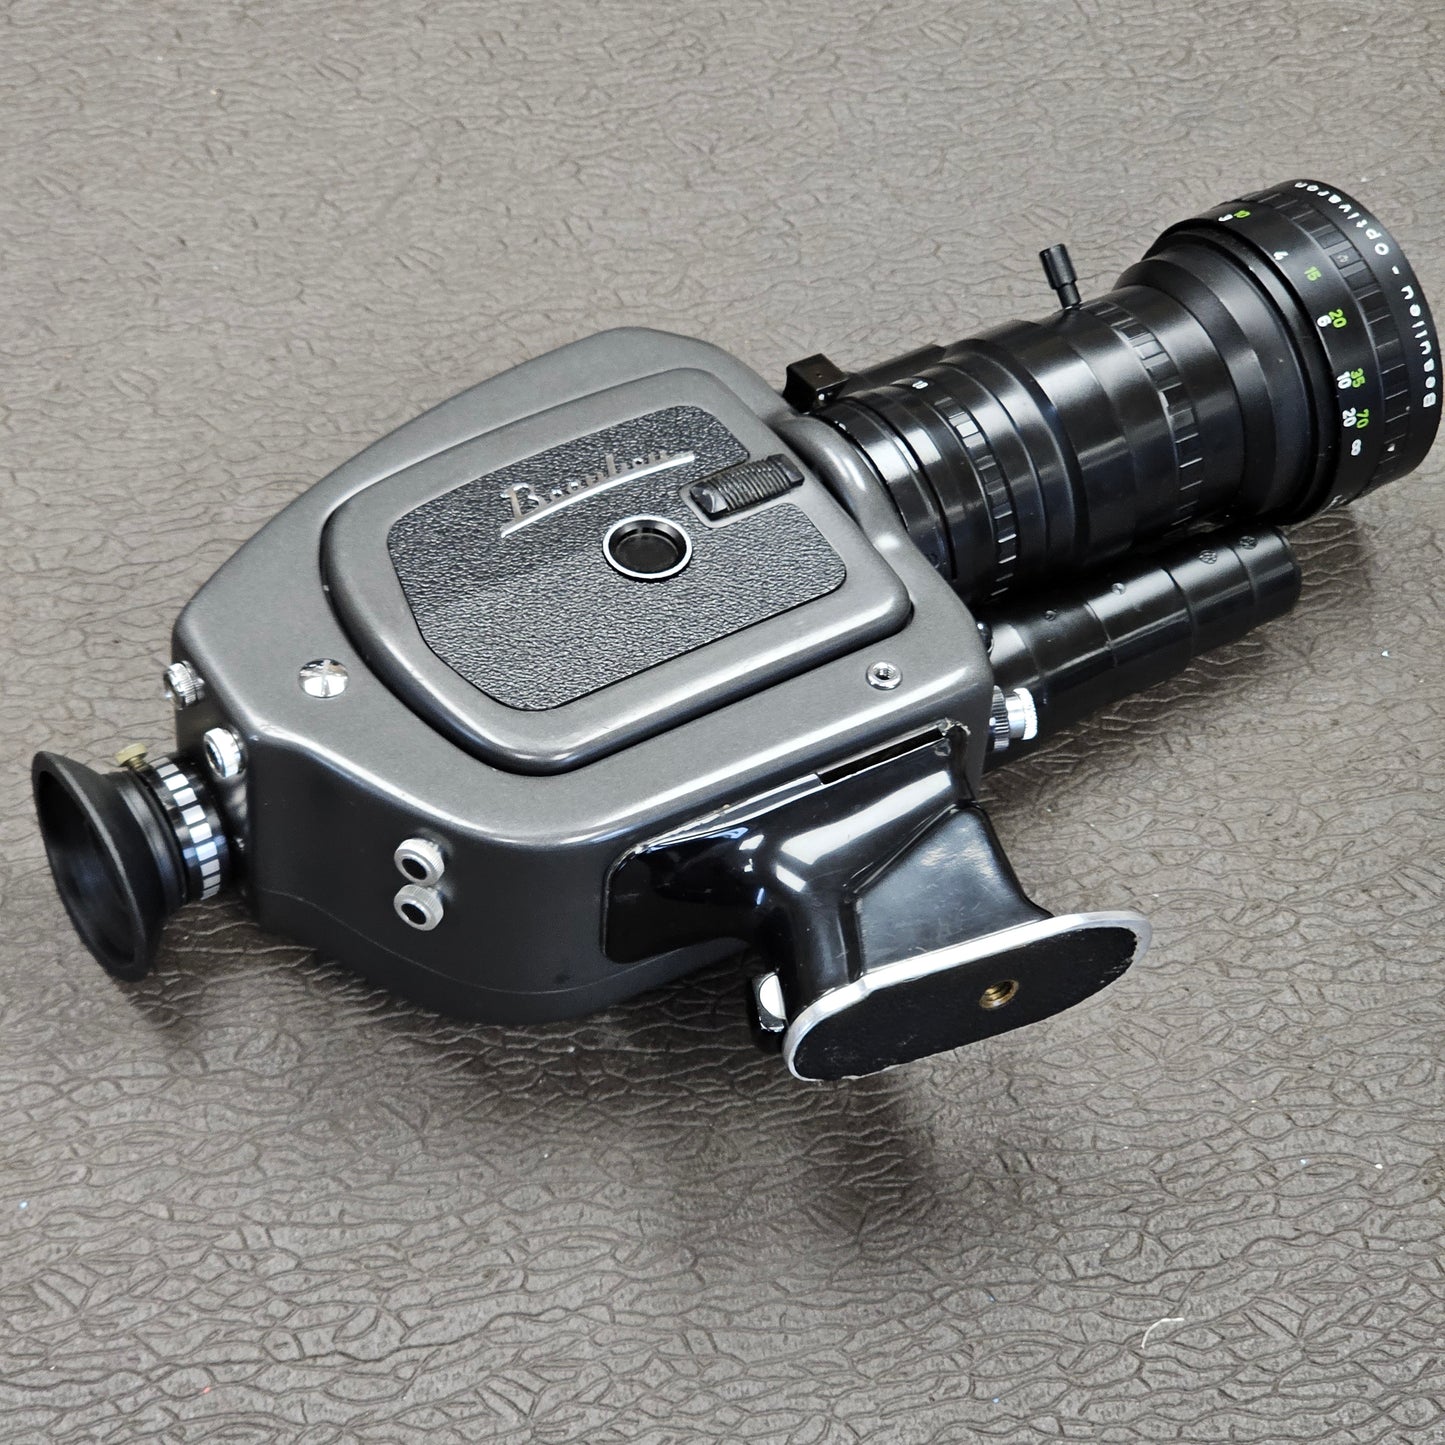 Beaulieu 4008 ZM2 Super 8mm Camera S# 818622 with Schneider-Kreuznach Beaulieu Optivaron 6-66mm T1.8 Zoom lens S# 11936958